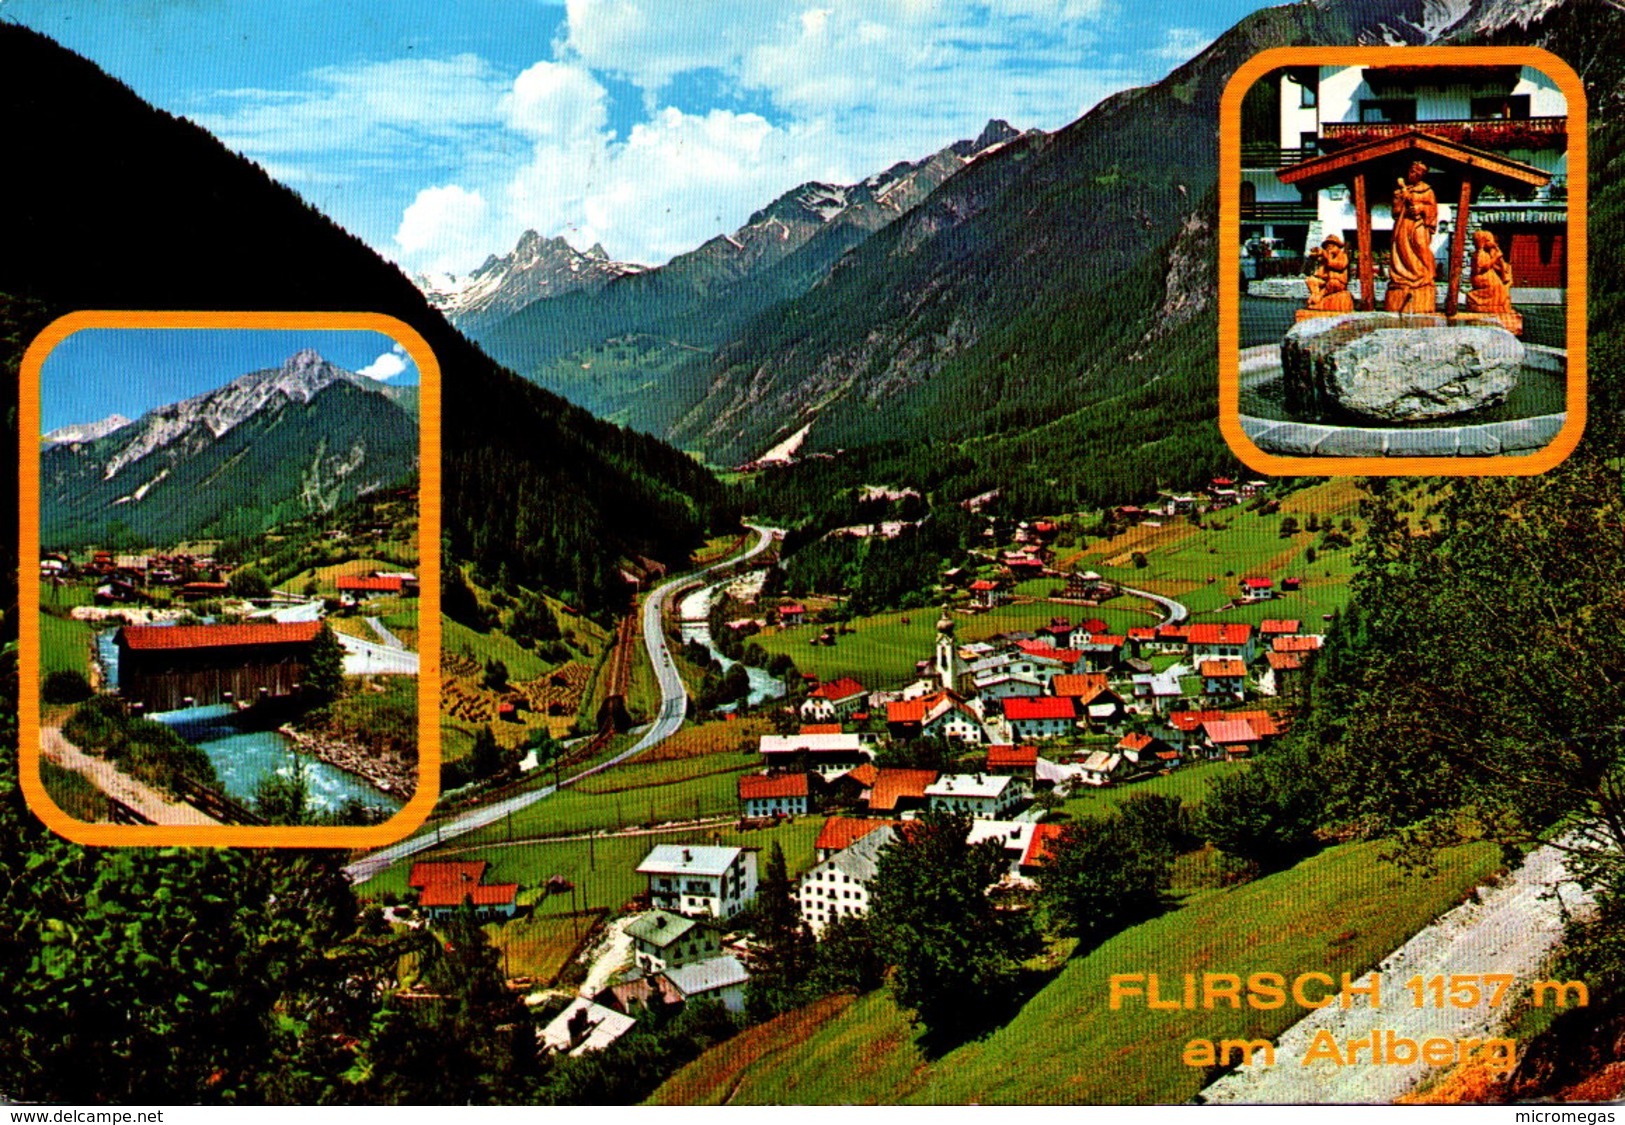 FLIRSCH Am Arlberg - Galtür